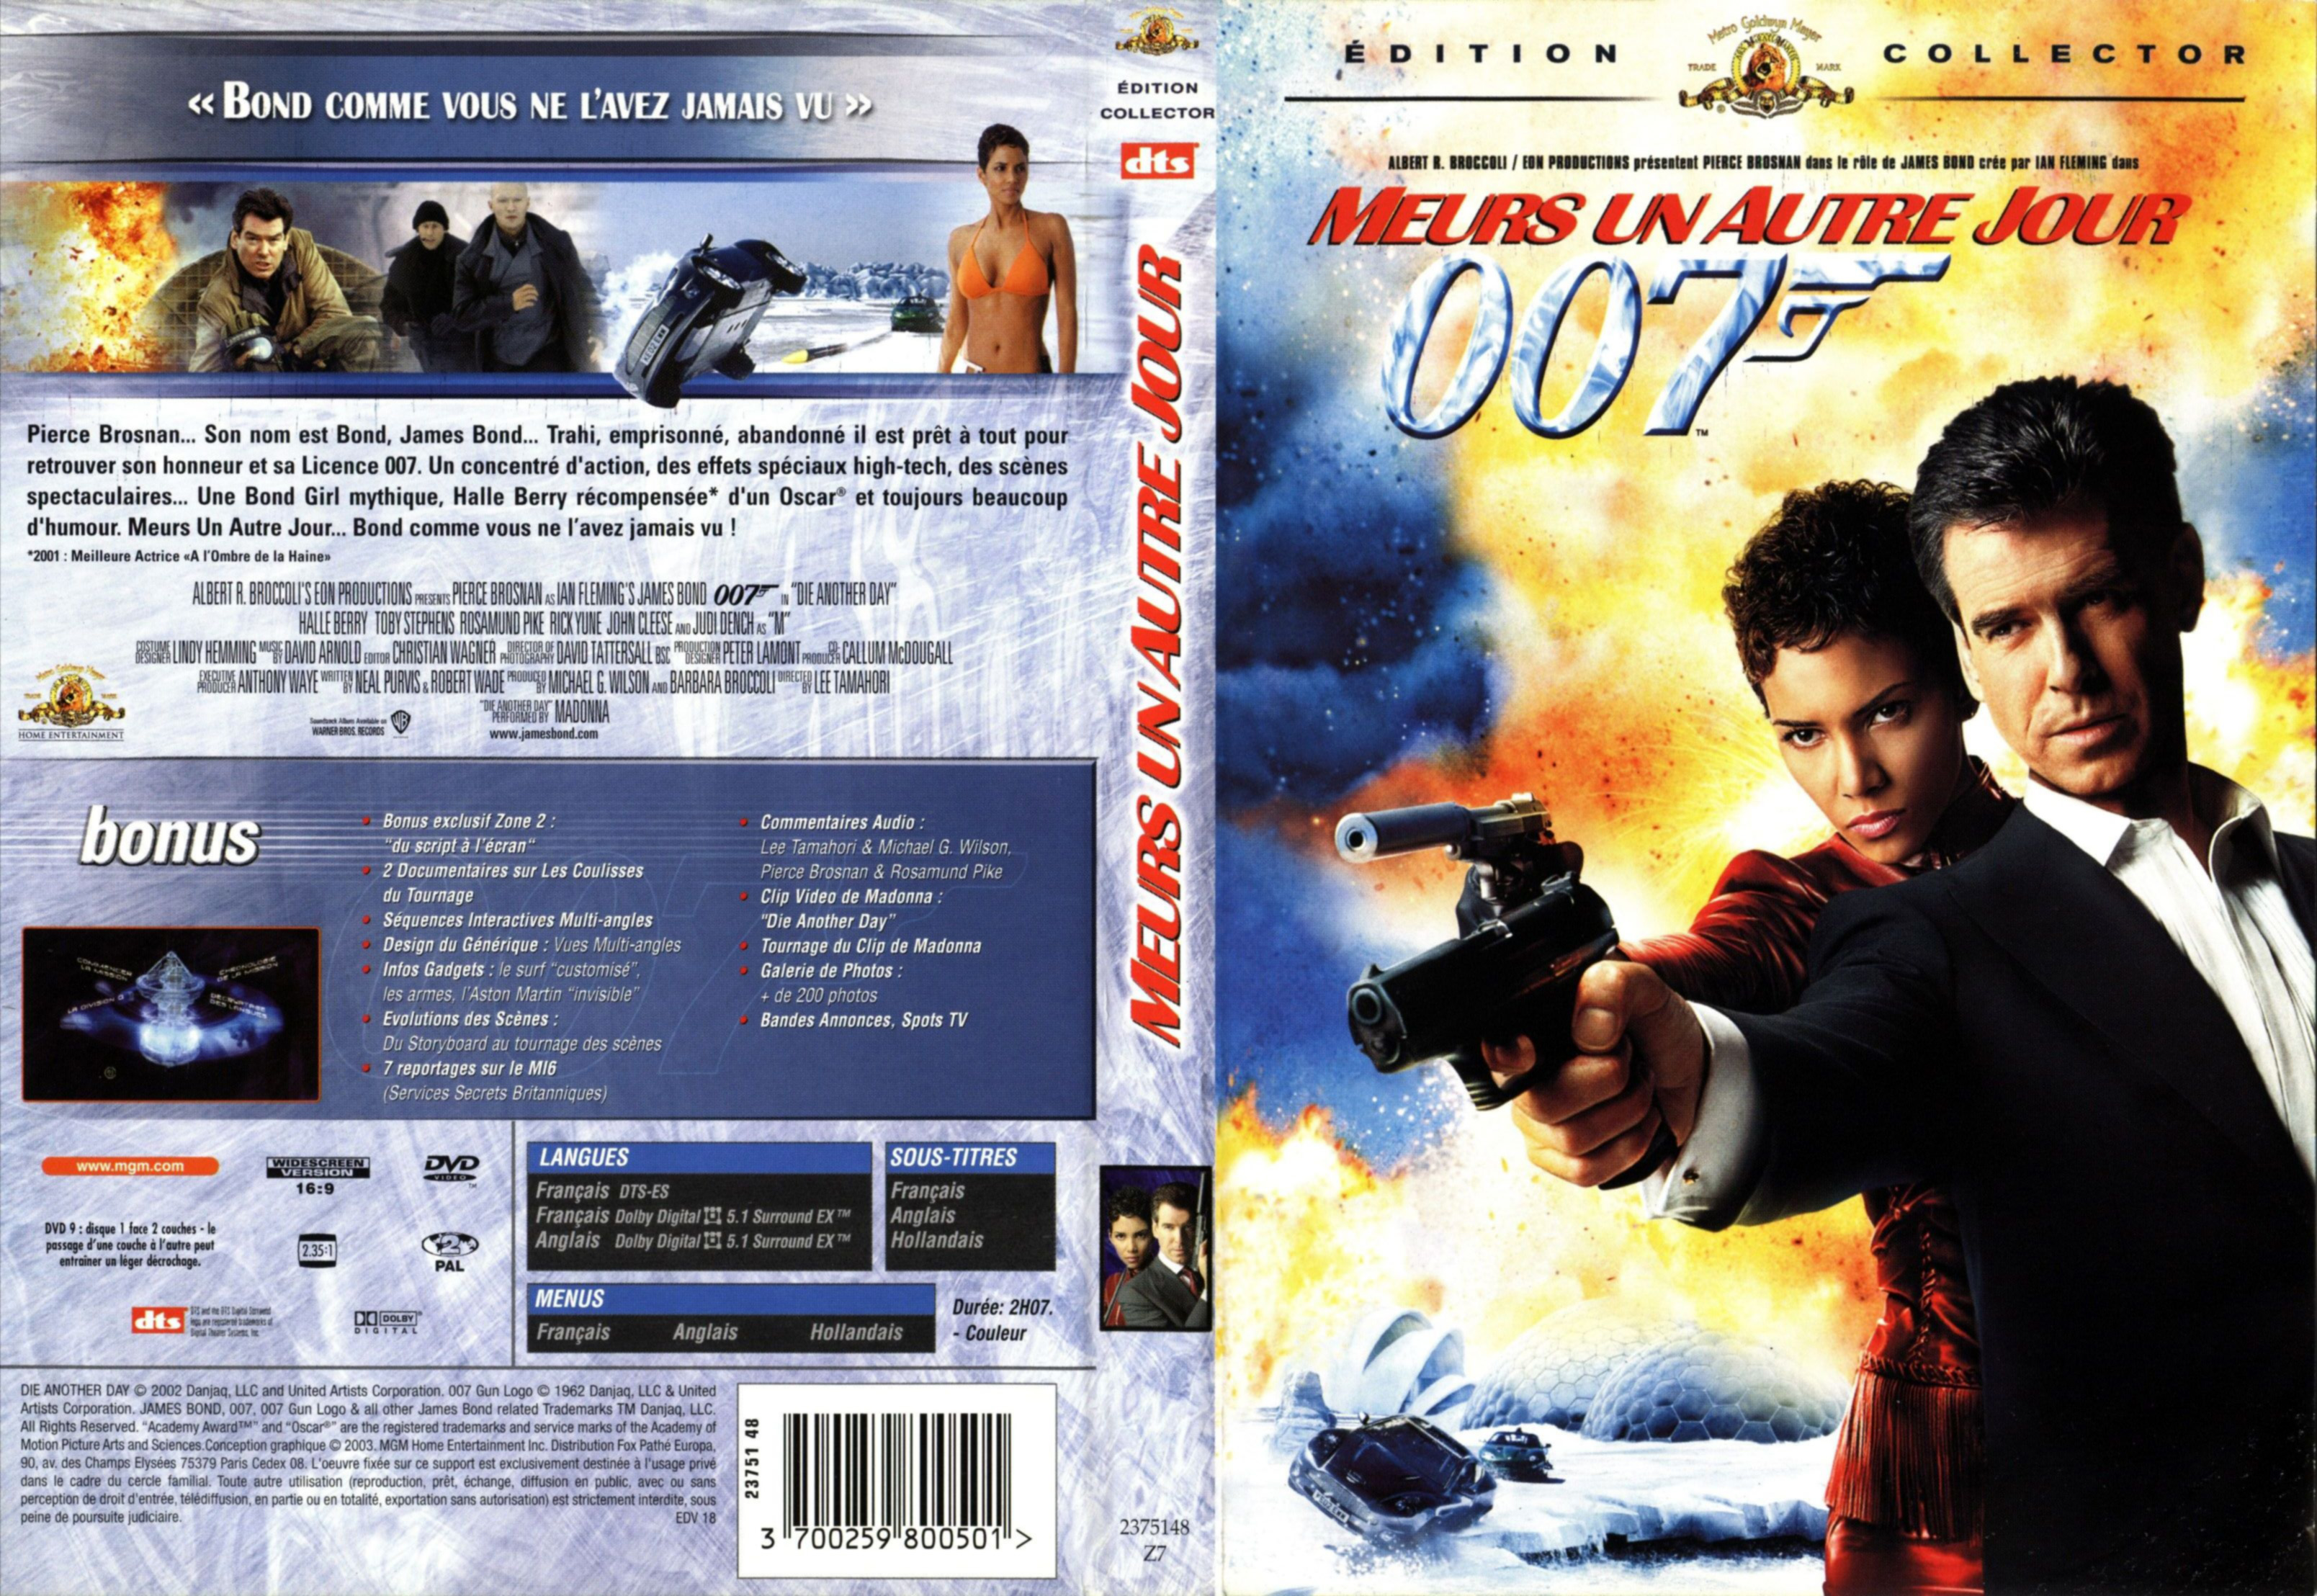 Jaquette DVD James Bond 007 Meurs un autre jour v2